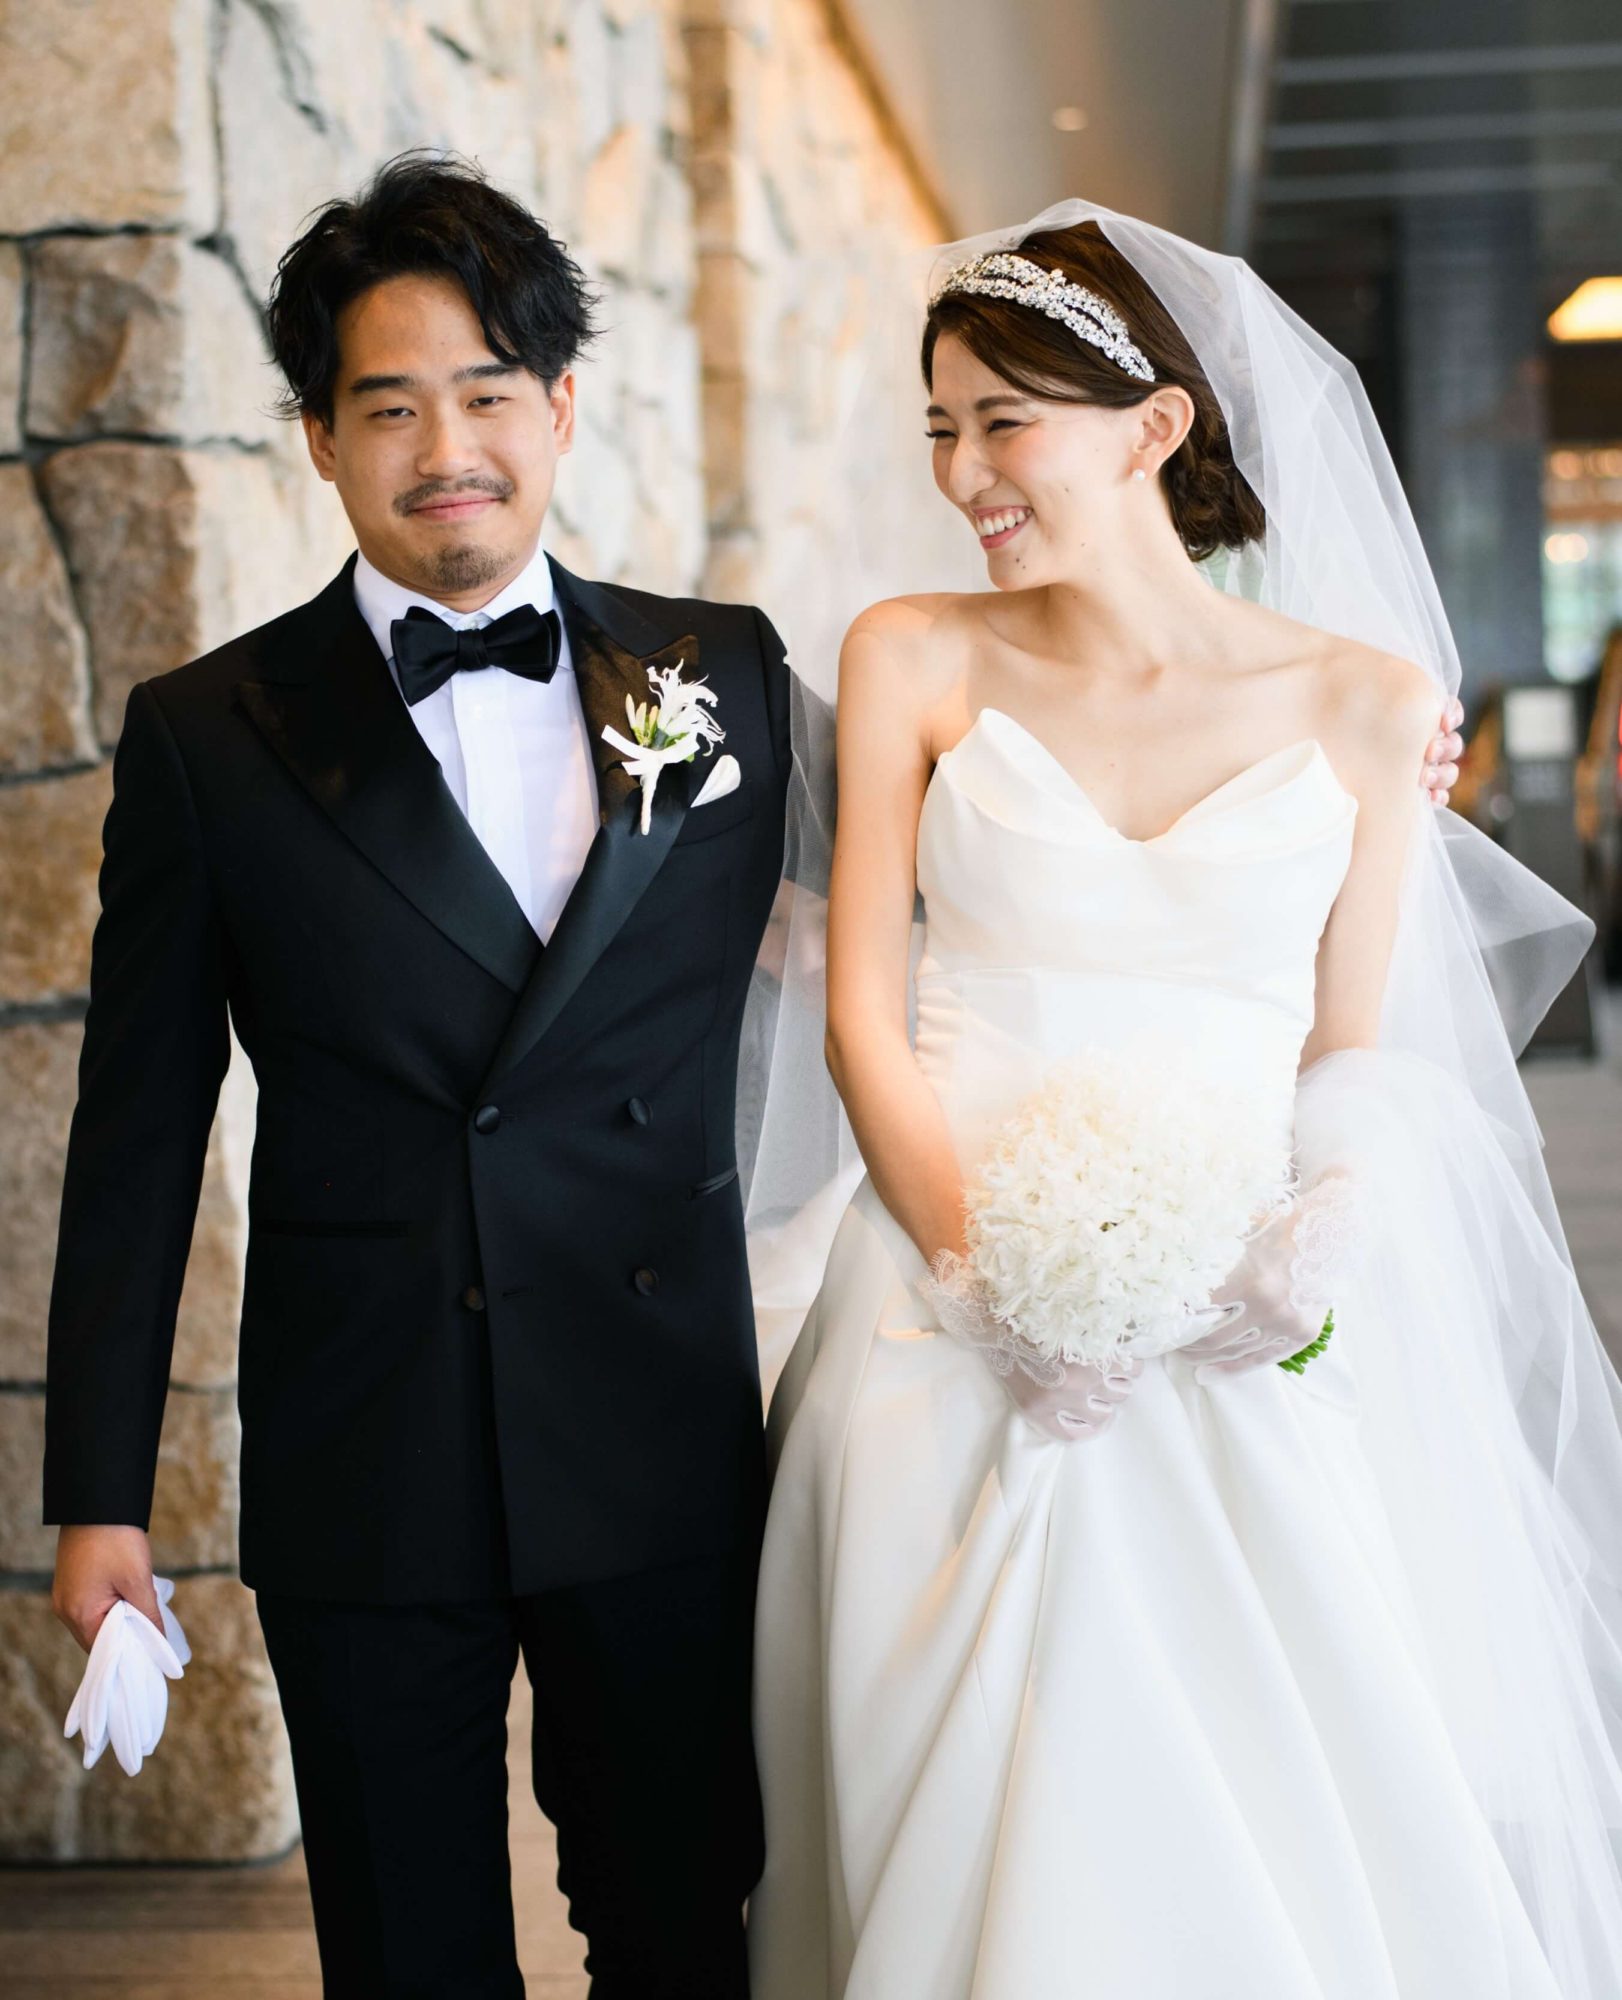 パレスホテル東京の結婚式で人気のモニーク・ルイリエのウェディングドレス